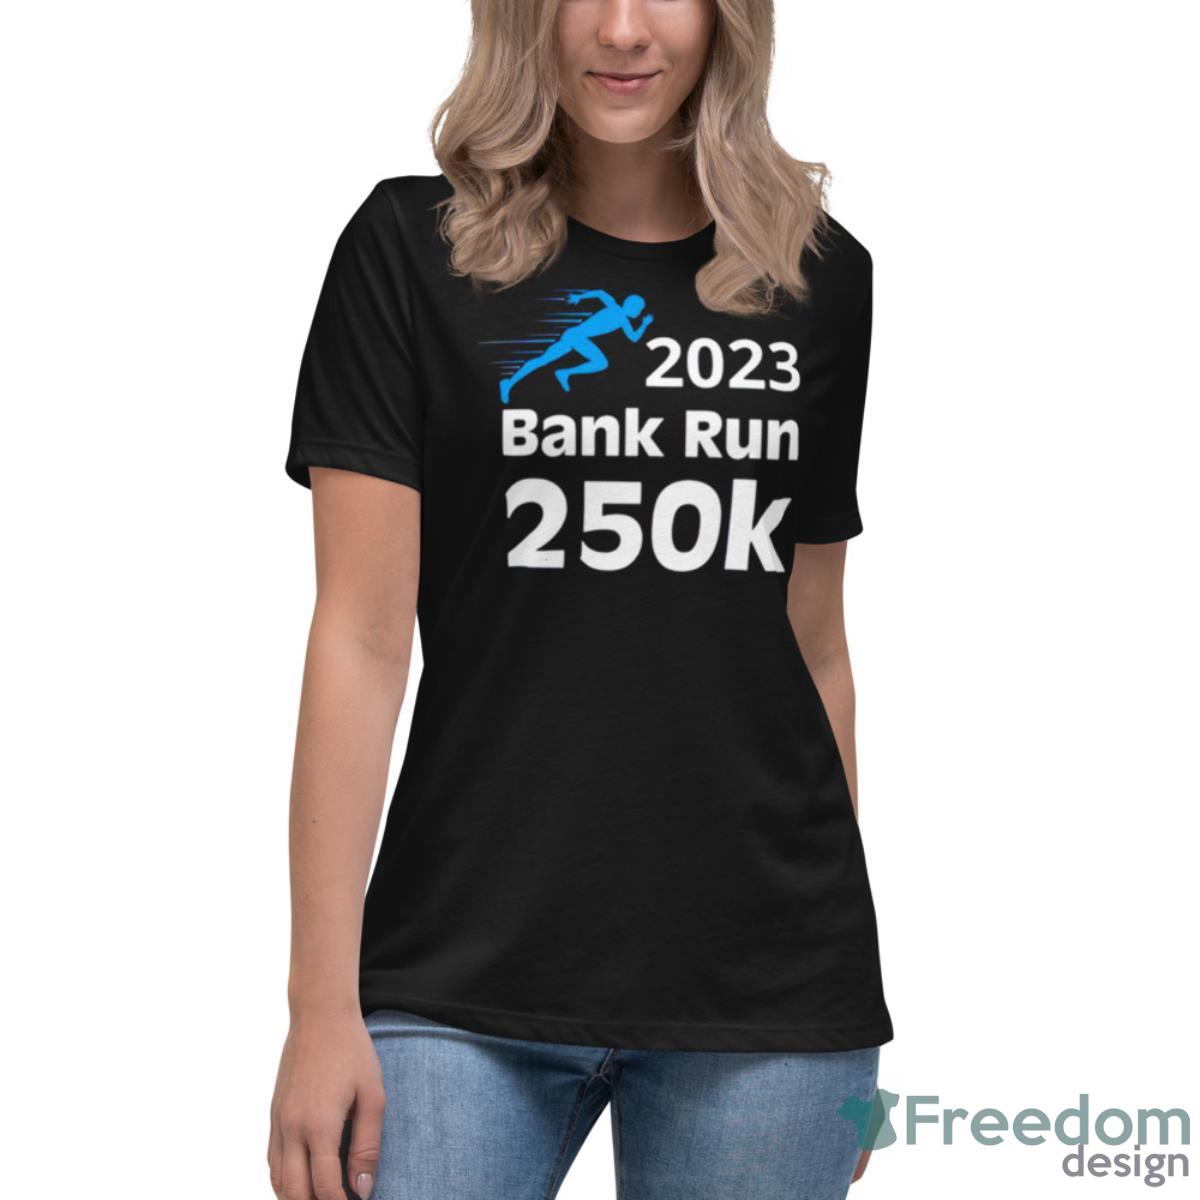 Svb 2023 Bank Run 250K Shirt